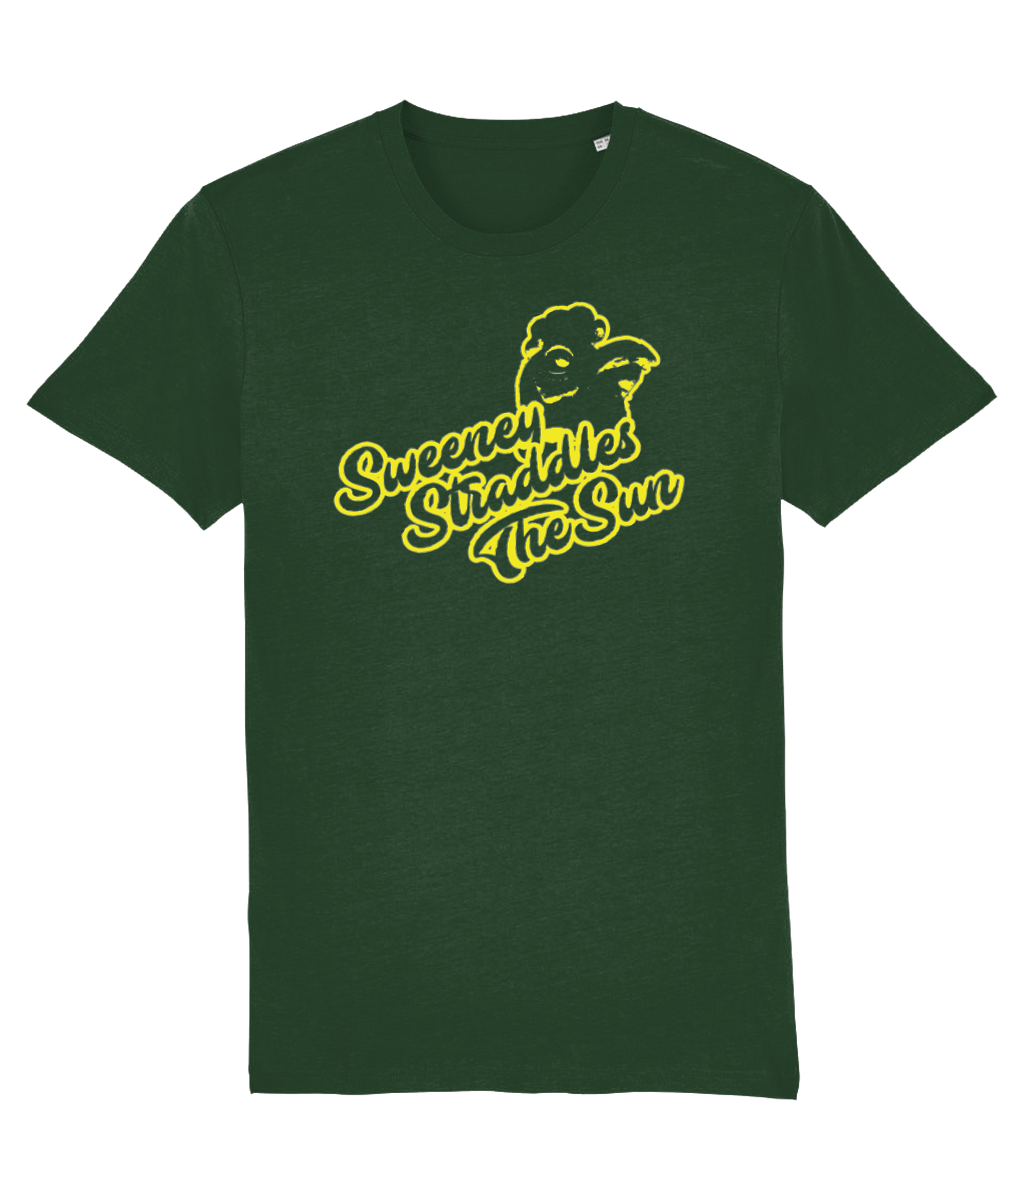 Sweeney Straddles The Sun T-shirt (Bottle Green)